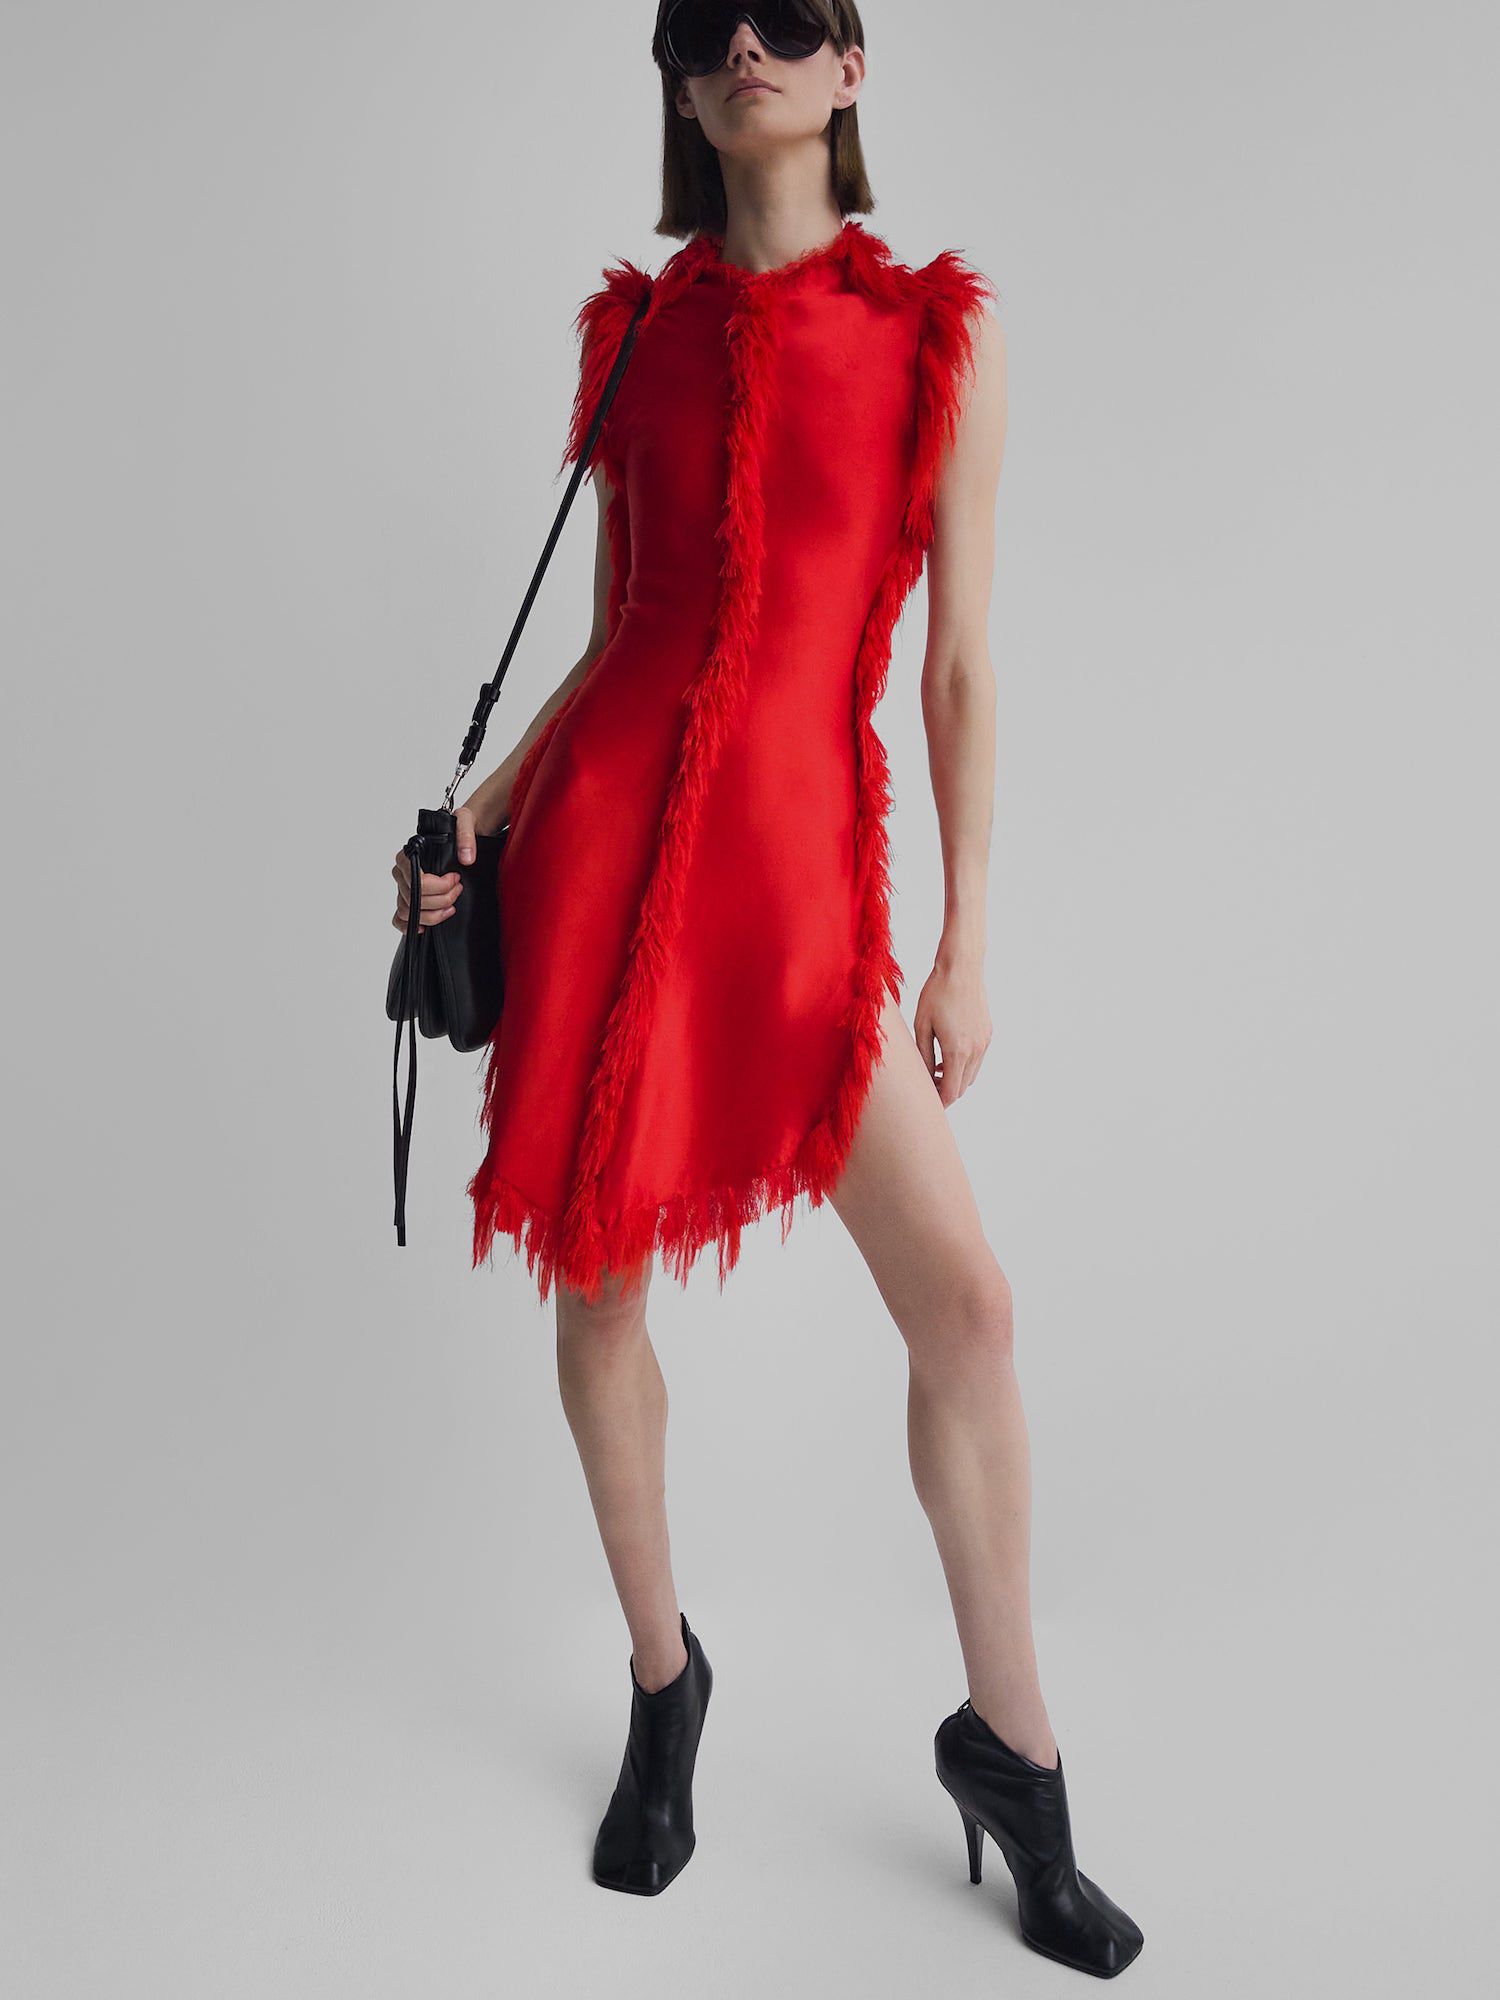 Modelo no mini-vestido vermelho Phoebe Philo com acabamento em bordados artesanais, emparelhado com botas de tornozelo preto, bolsa e óculos de sol